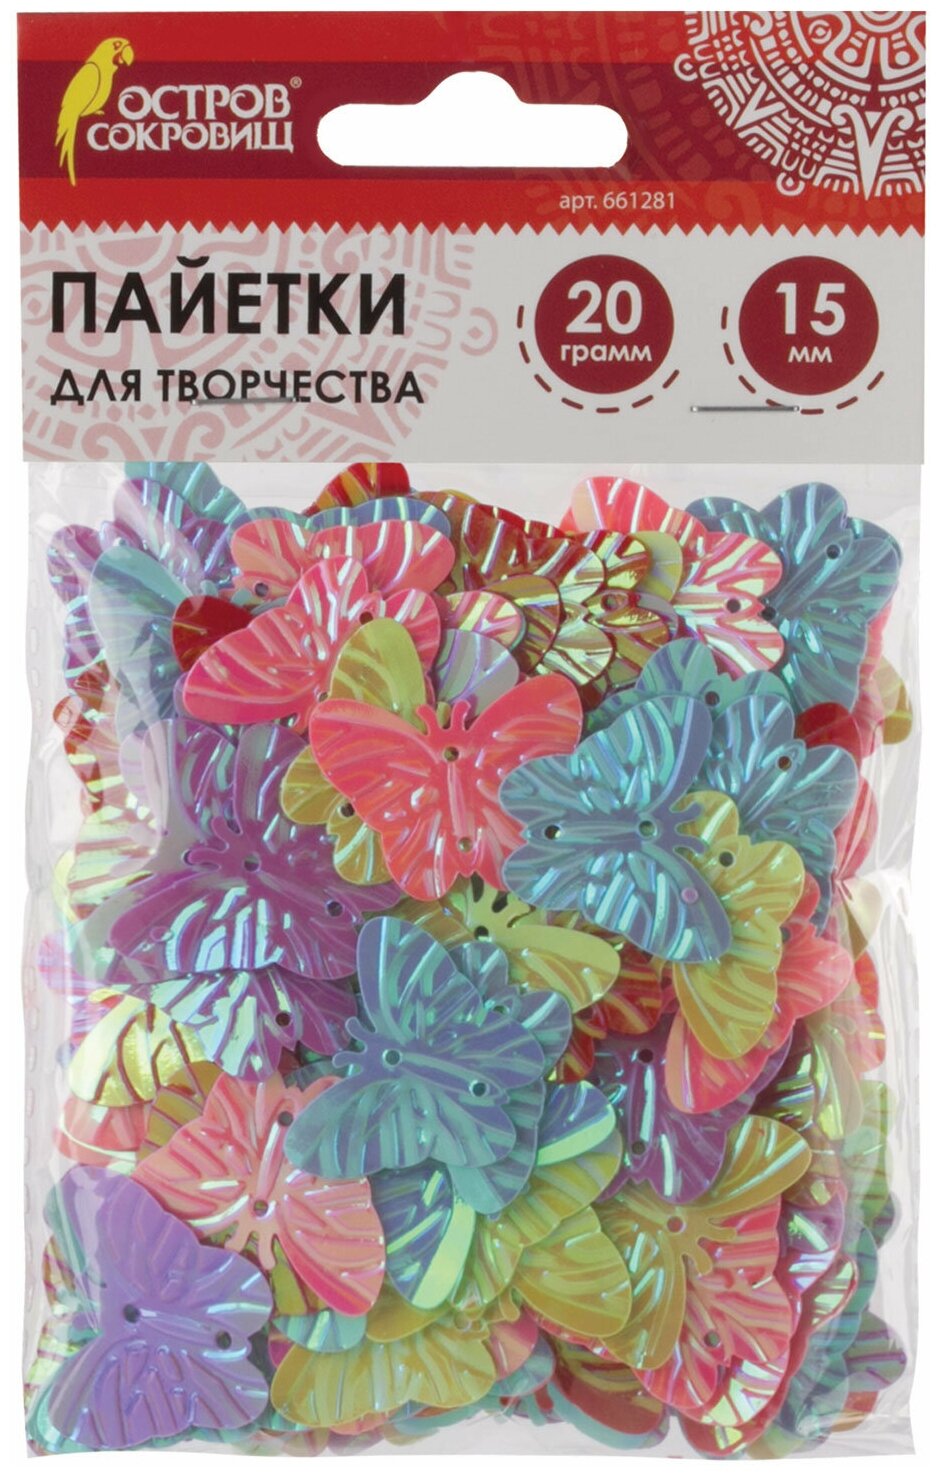 Пайетки для творчества "Бабочки", яркие, цвет ассорти, 5 цветов, 15 мм, 20 грамм, остров сокровищ, 661281 - 1 шт.